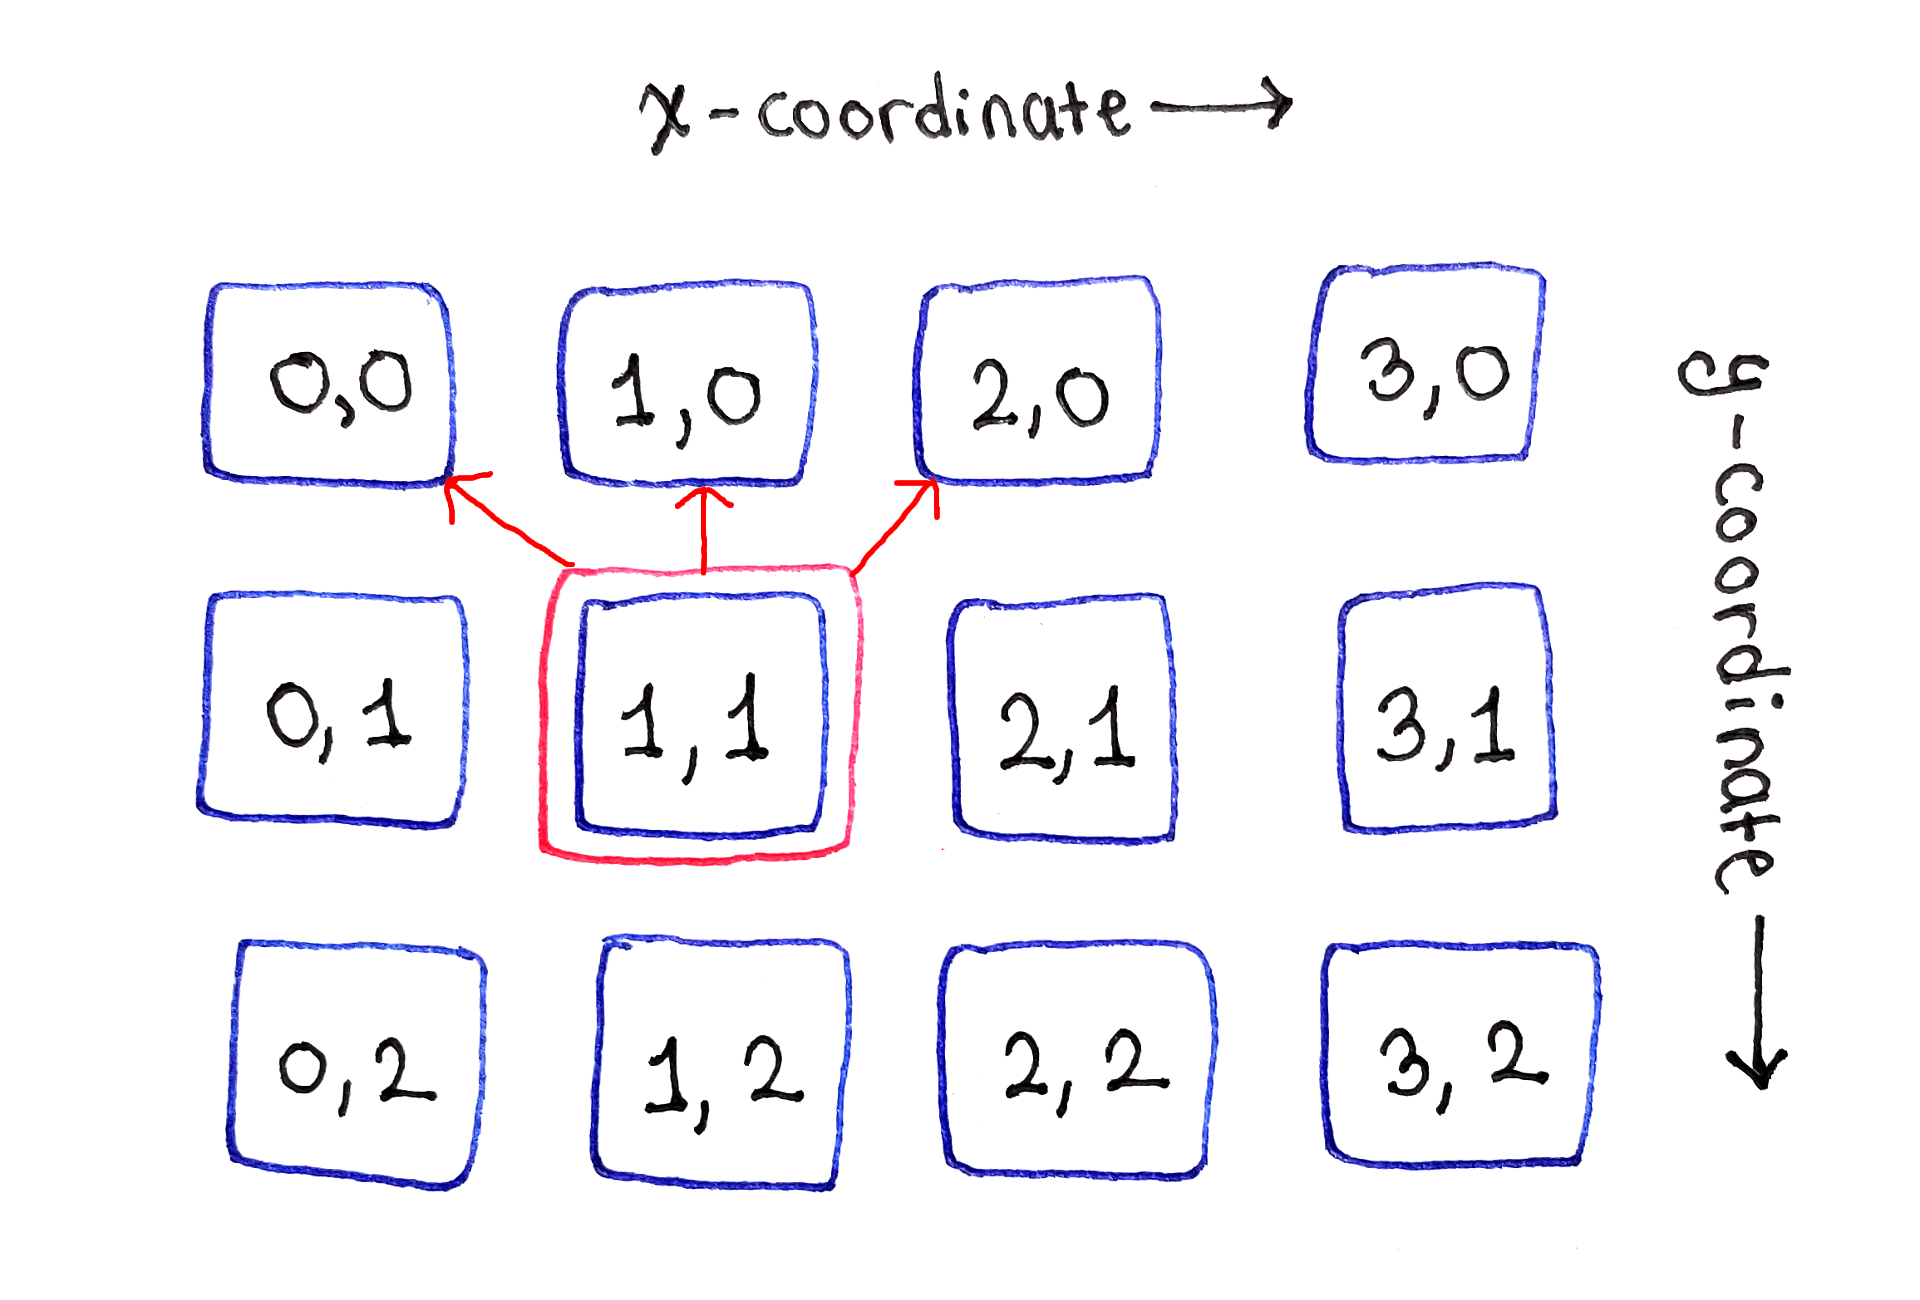 左右边缘之间的子问题依赖于上方的三个子问题。